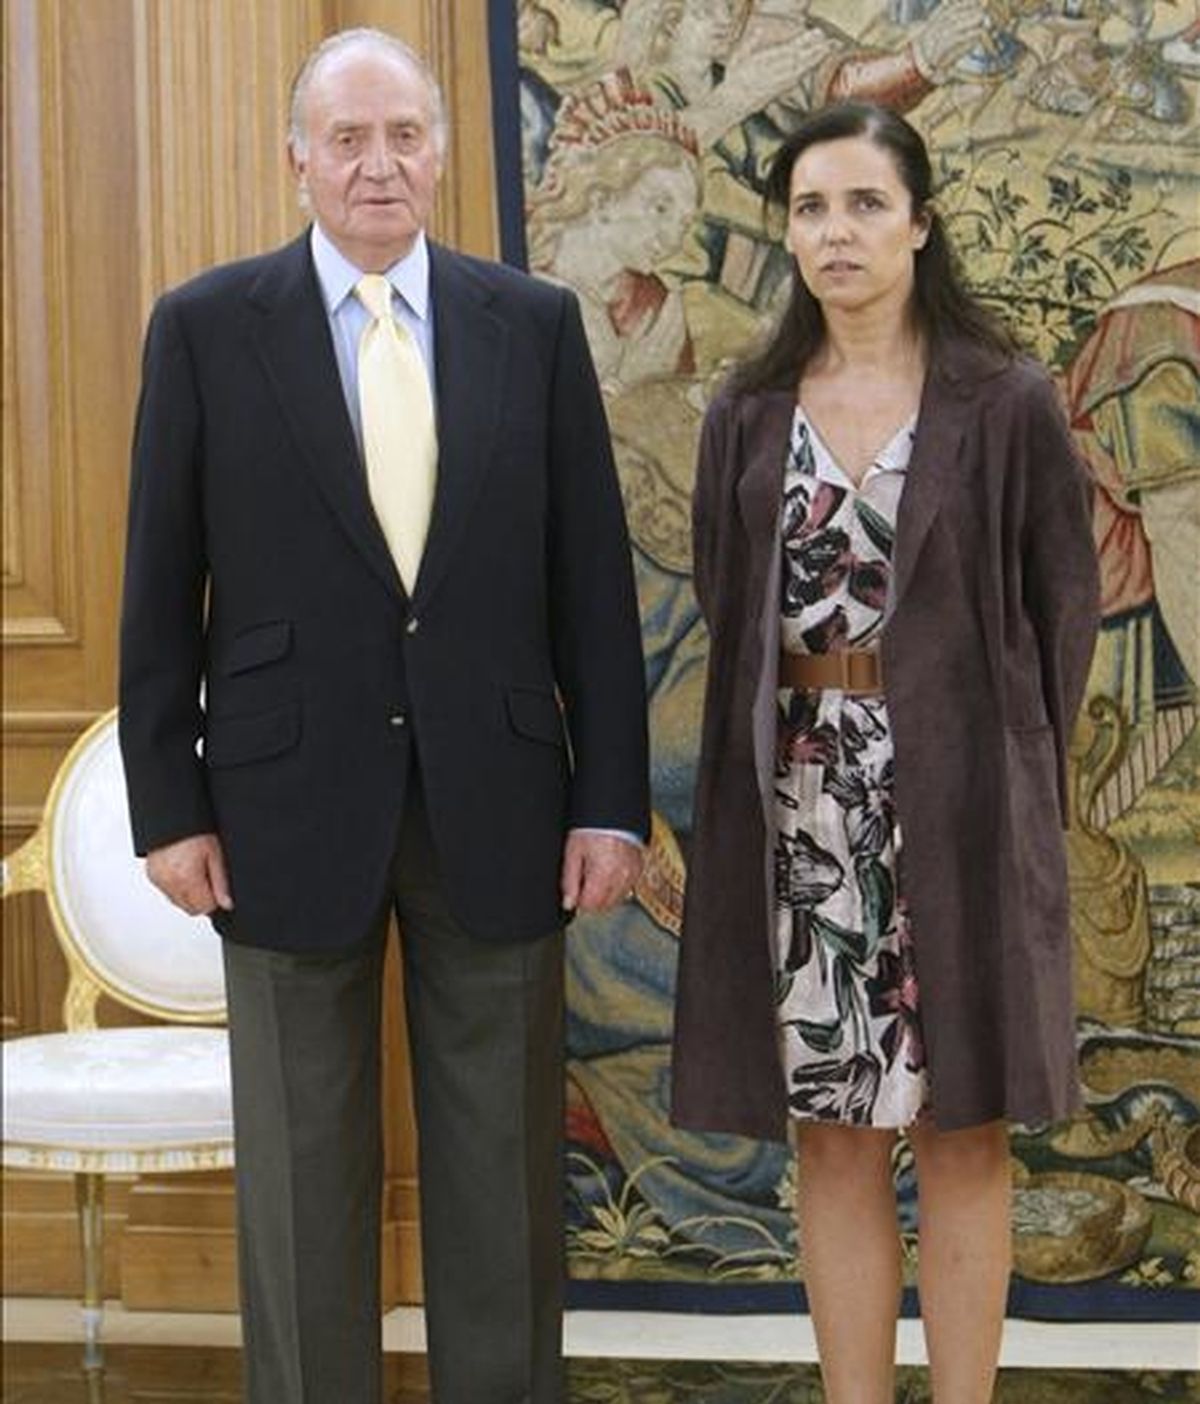 El rey Juan Carlos recibió hoy en audiencia en el Palacio de la Zarzuela a la presidenta del Parlamento de Galicia, Pilar Rojo, quien comunicó a la Casa Real la elección por el Parlamento de Galicia de Alberto Núñez Feijóo como presidente de la Xunta. EFE